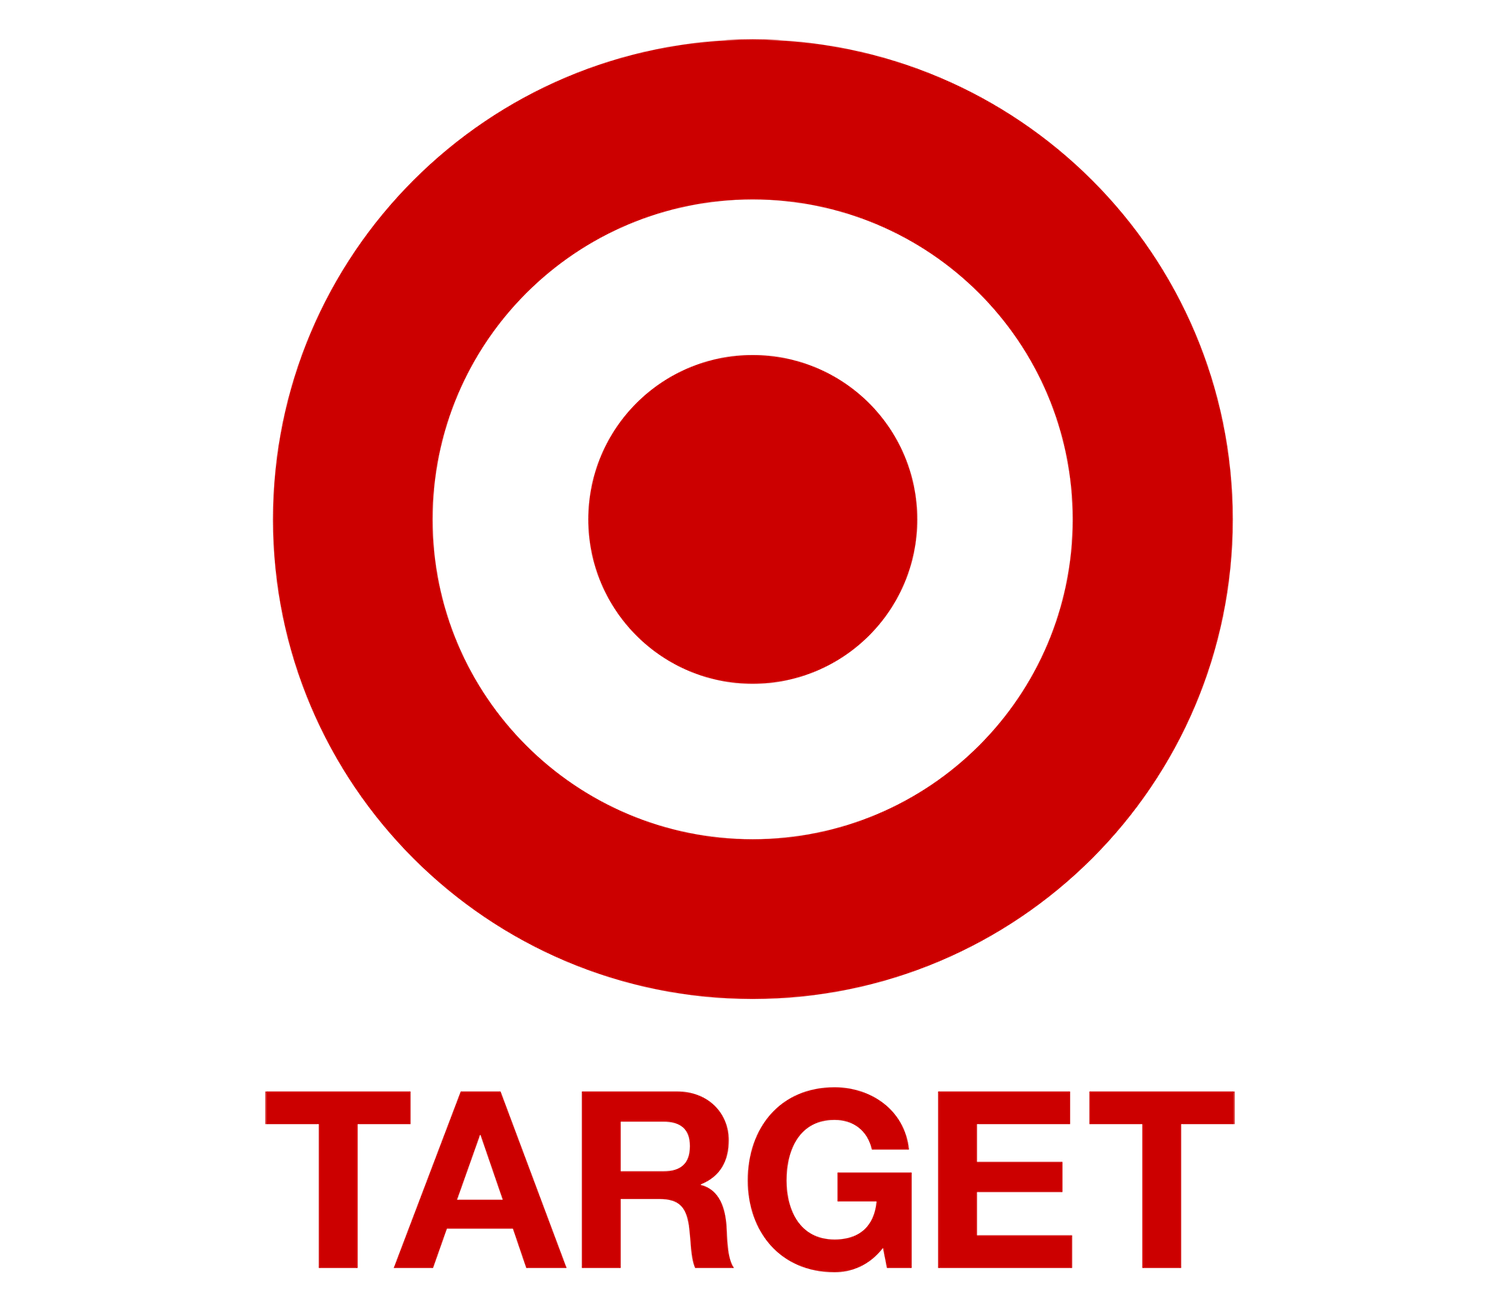 Target-Logo.png